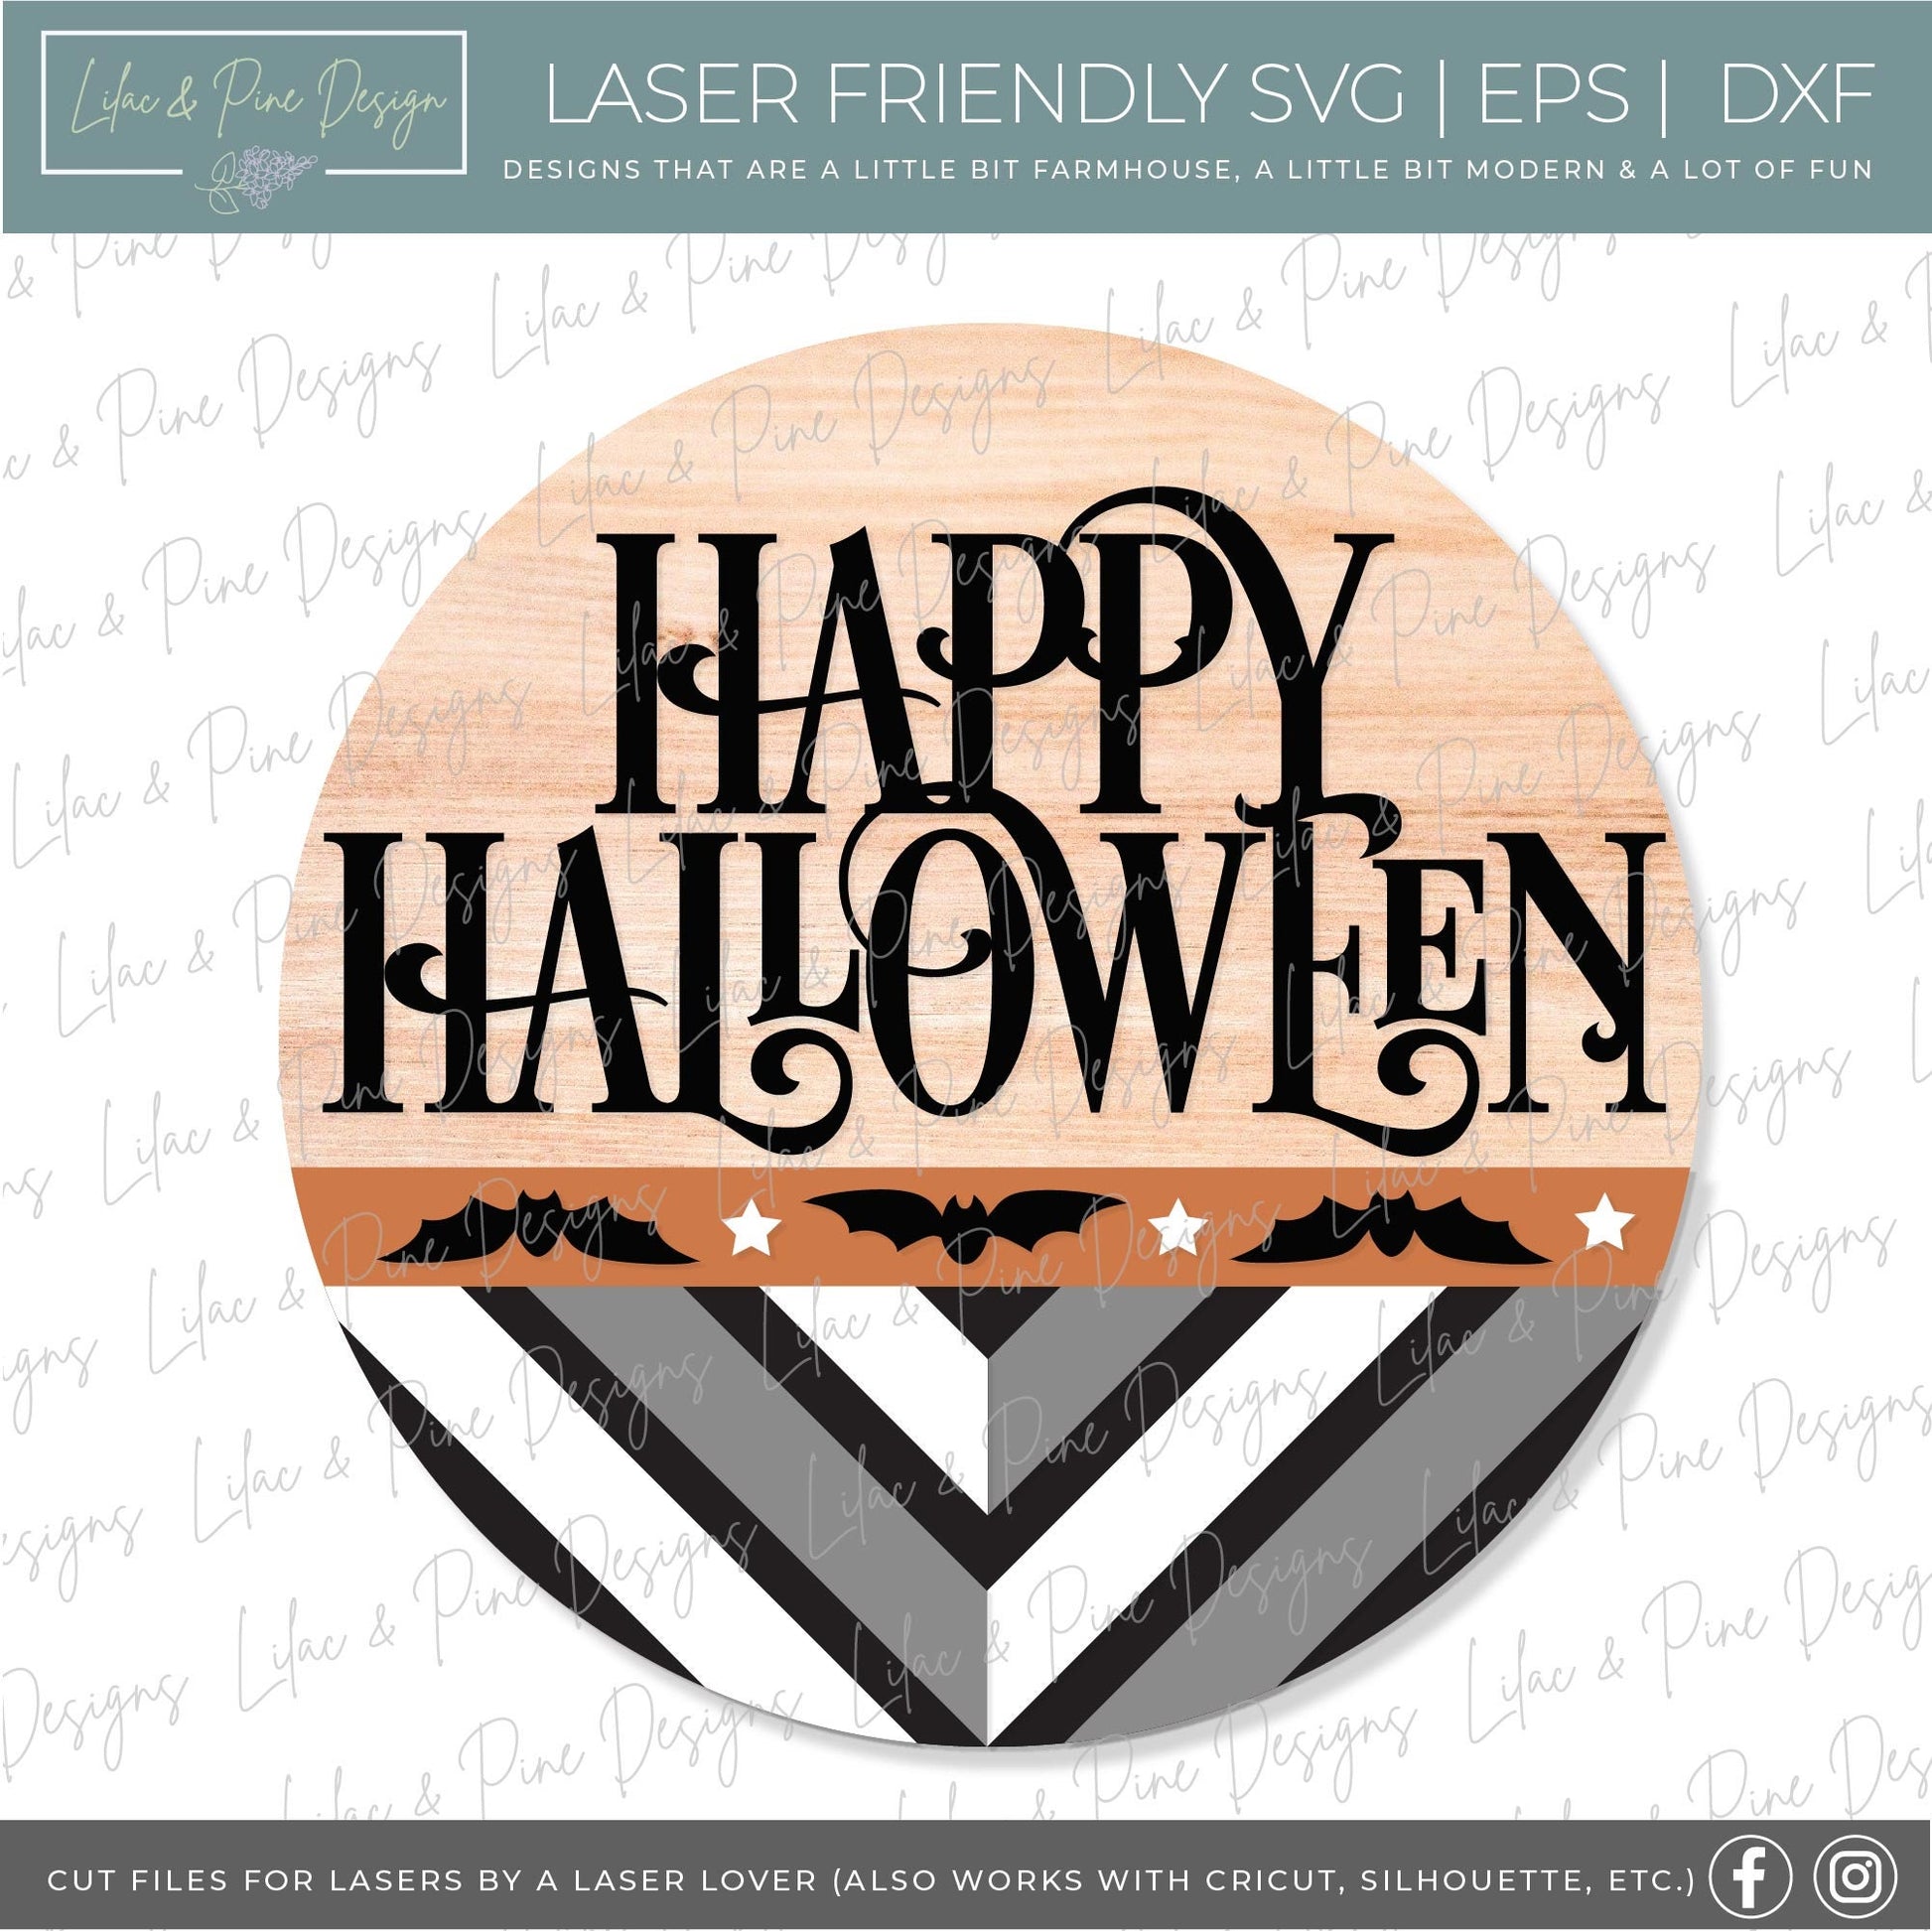 Happy Halloween door hanger SVG, Boho bat door hanger, Boho welcome sign SVG, Halloween welcome sign, Halloween decor, Glowforge laser SVG